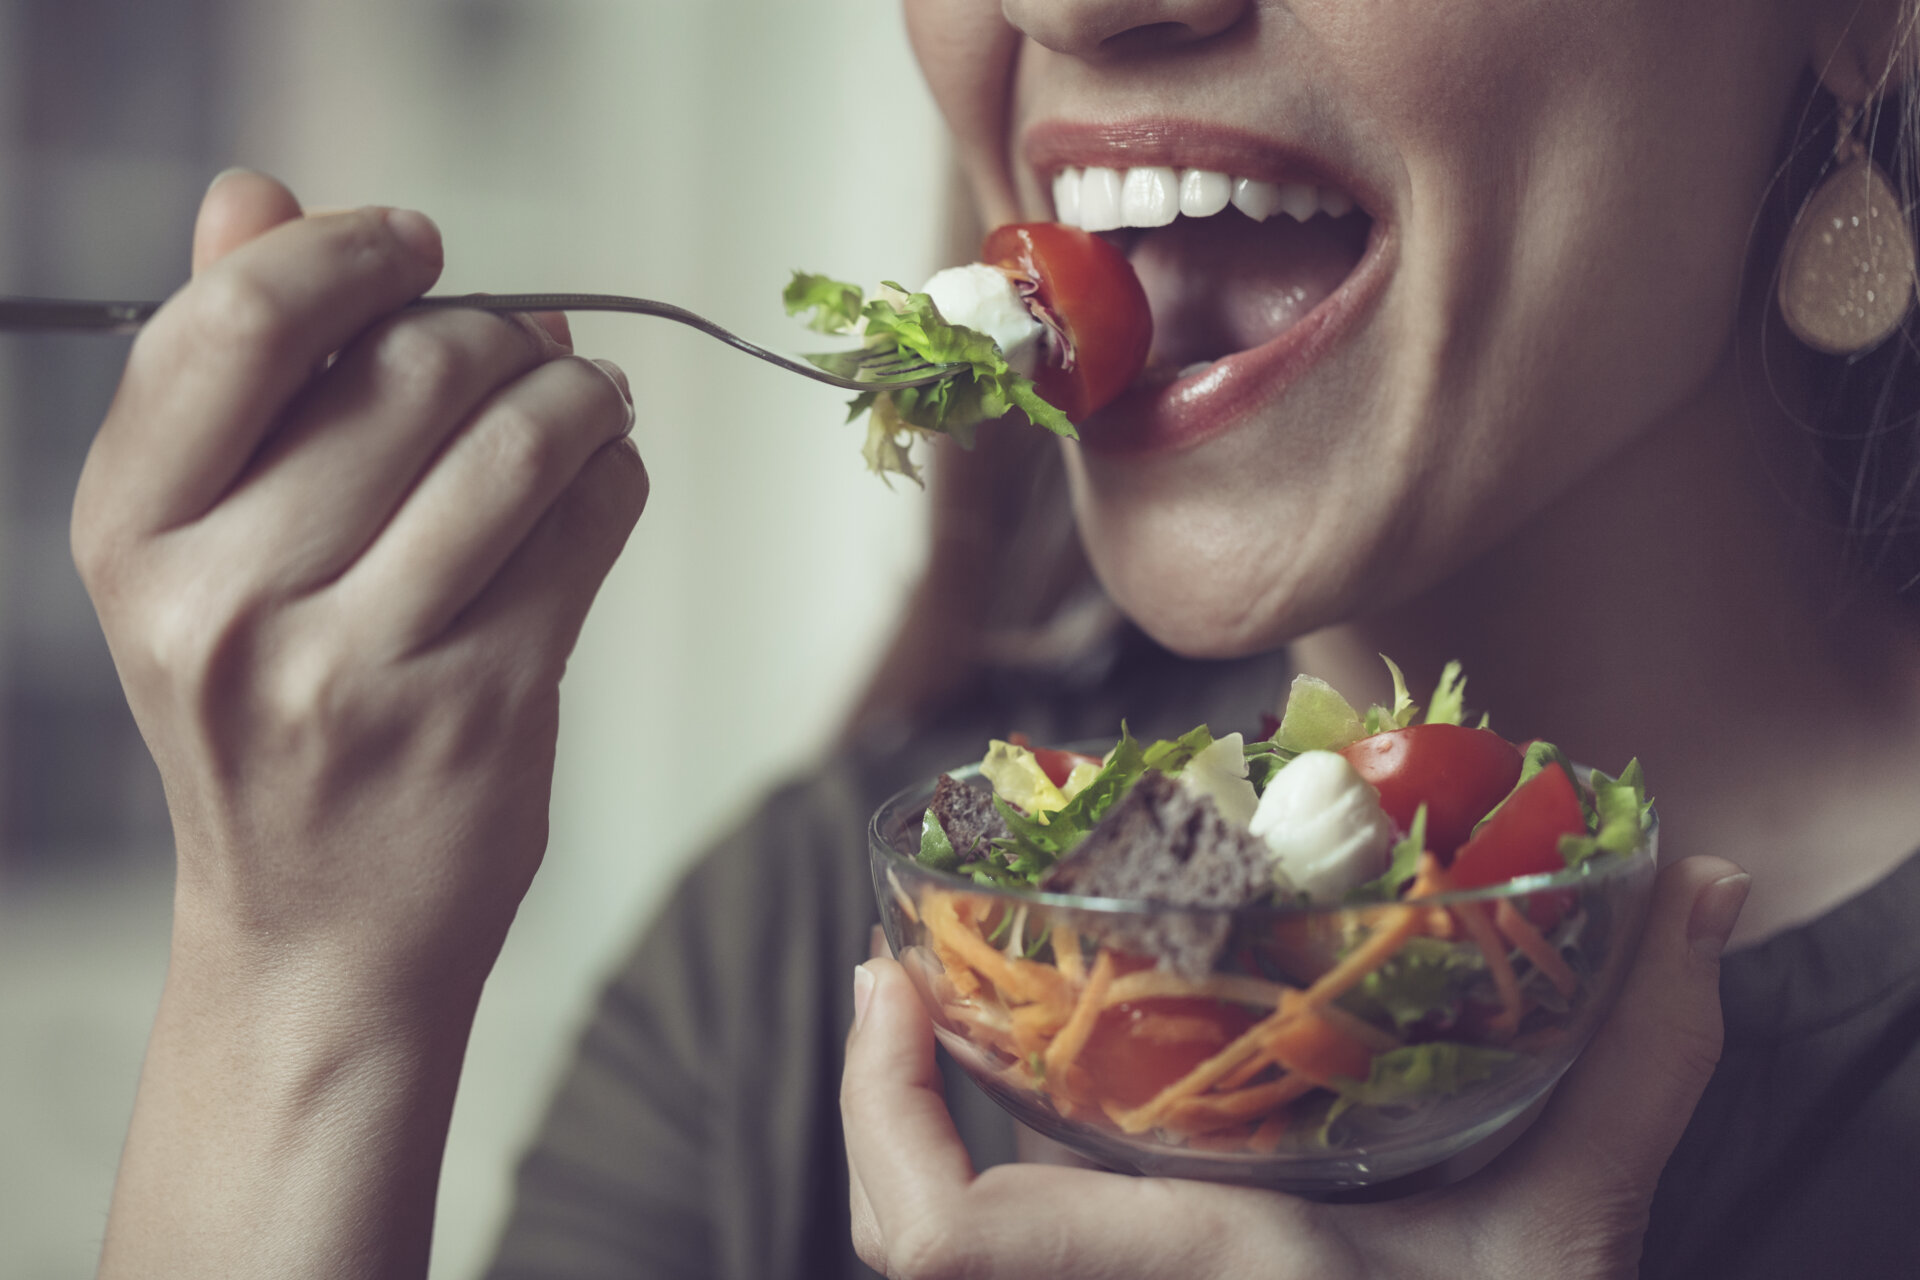 Κοντινό πλάνο μιας γυναίκας που τρώει μια σαλάτα με διάφορα λαχανικά εποχής, τα οποία είναι συχνά υπεύθυνα για την πρόκληση φουσκώματος.